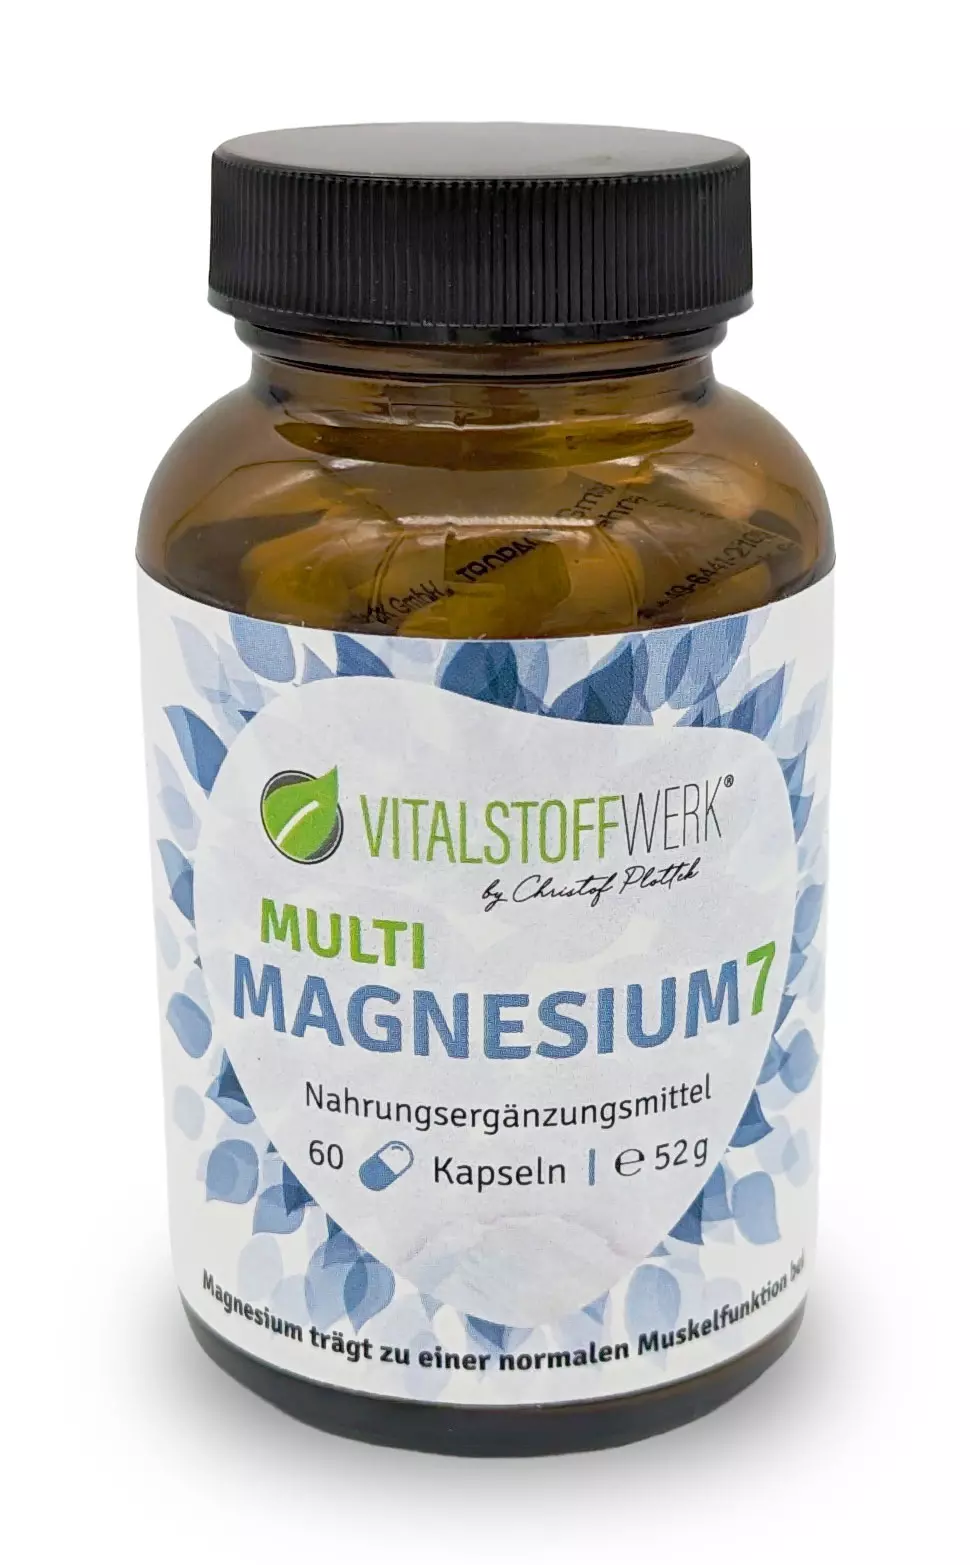 Multi Magnesium 7, 60 Kapseln